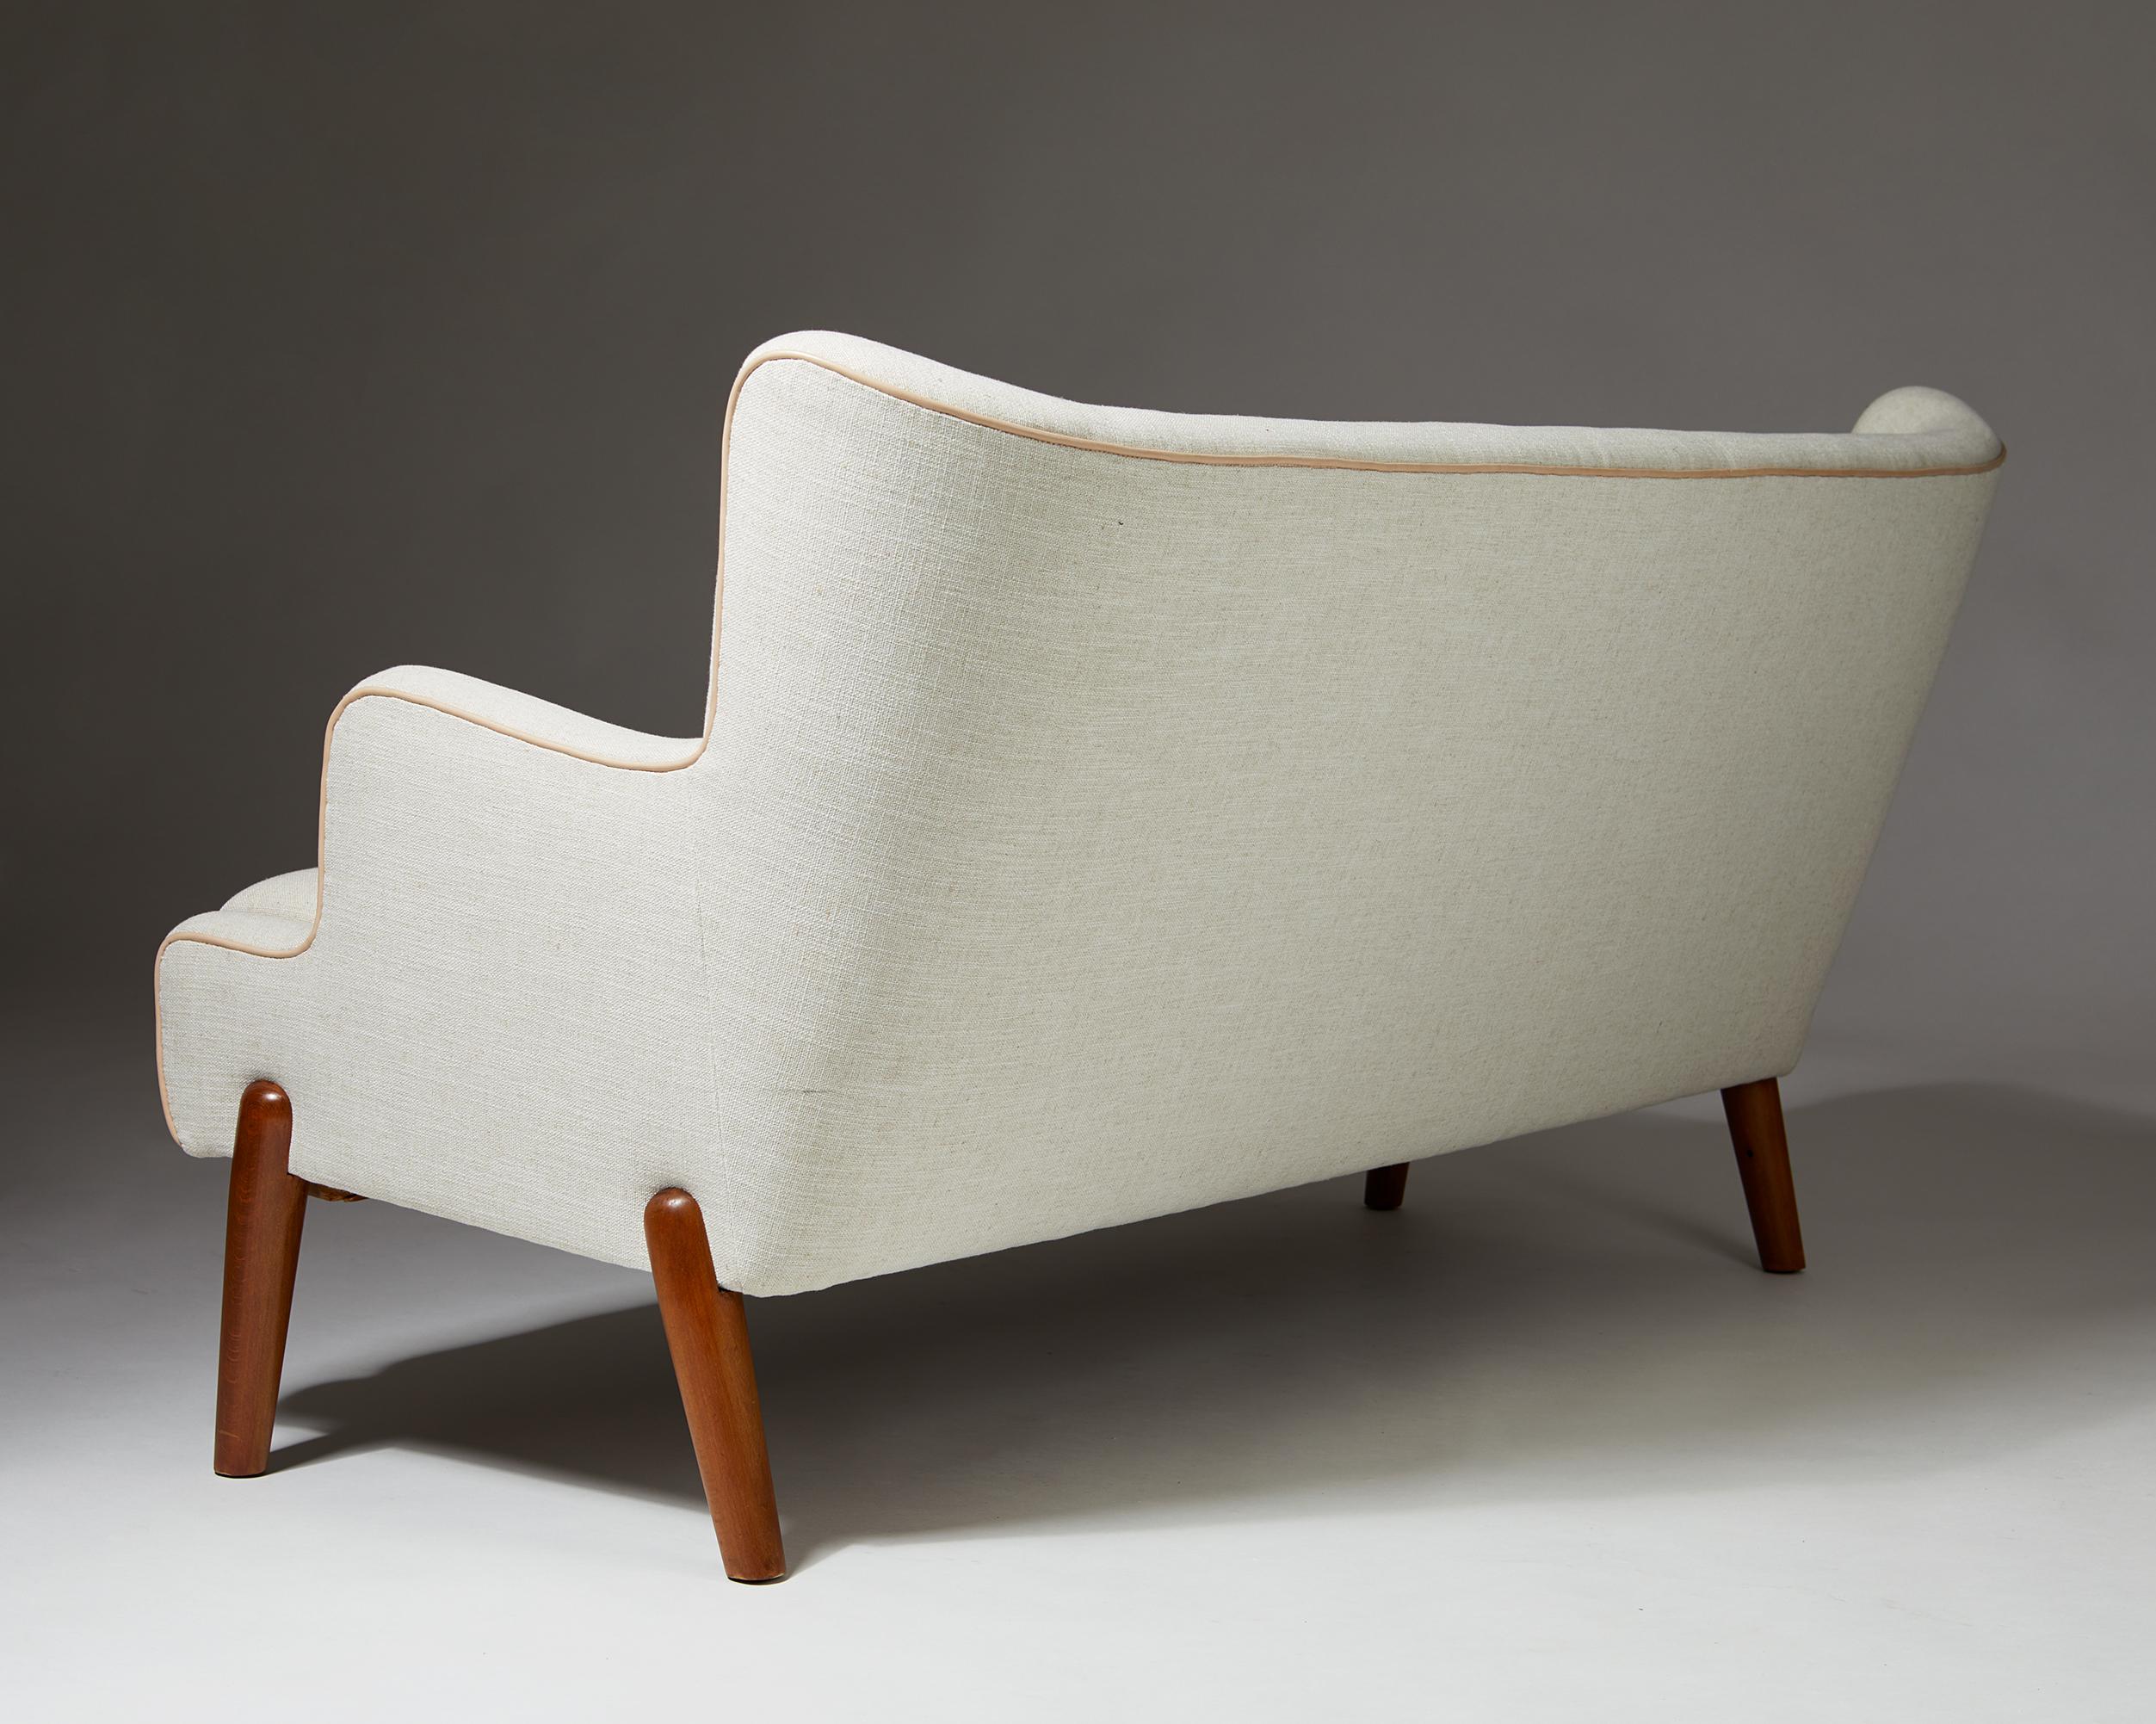 Leather Sofa “Koppel” Designed by Eva and Nils Koppel for Slagelse Møbelværk, Denmark